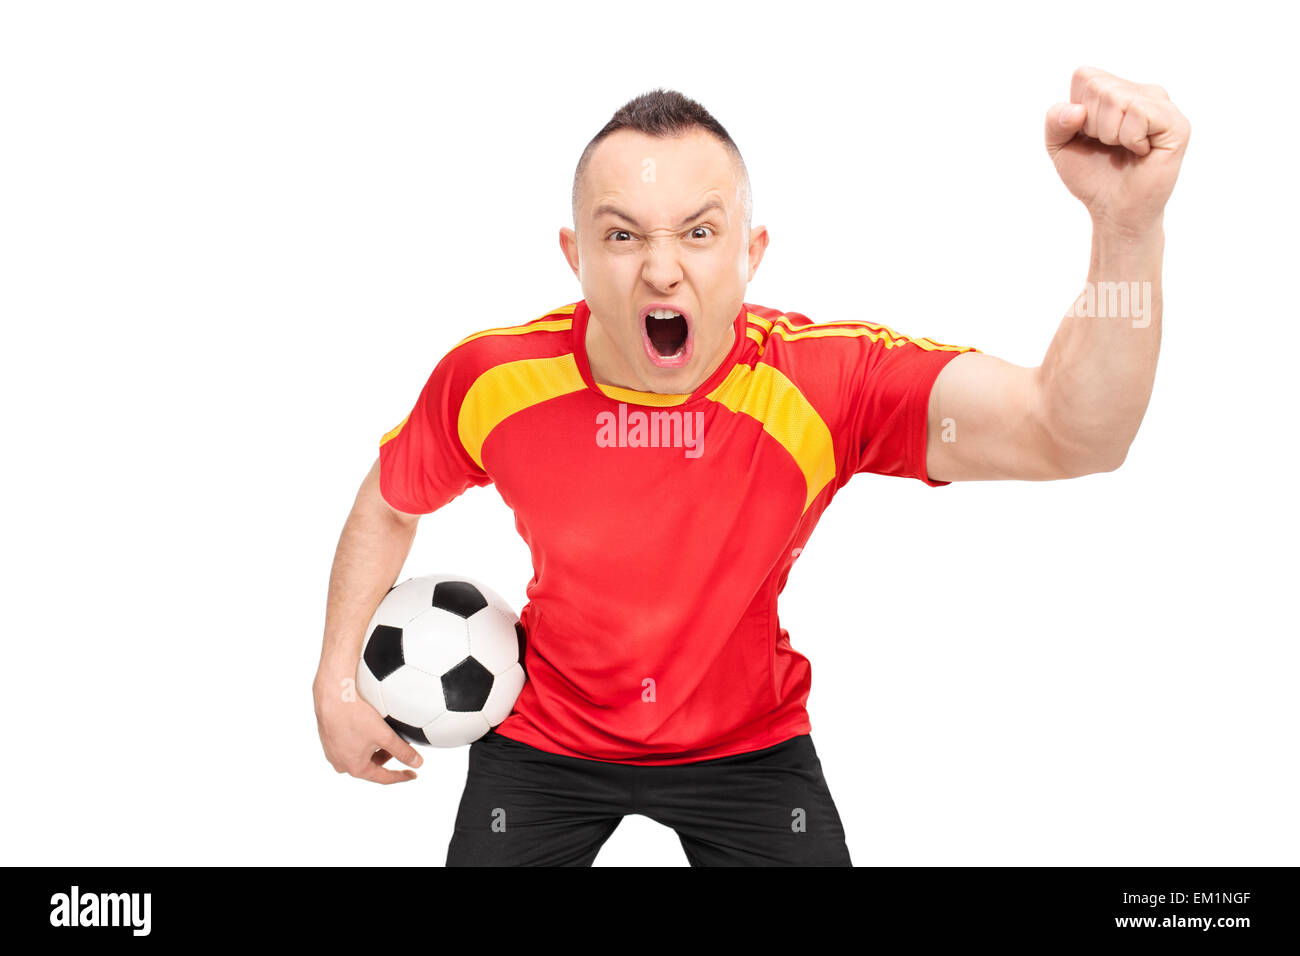 Les jeunes sports fan extatique dans un maillot de football rouge holding a football et acclamer isolé sur fond blanc Banque D'Images